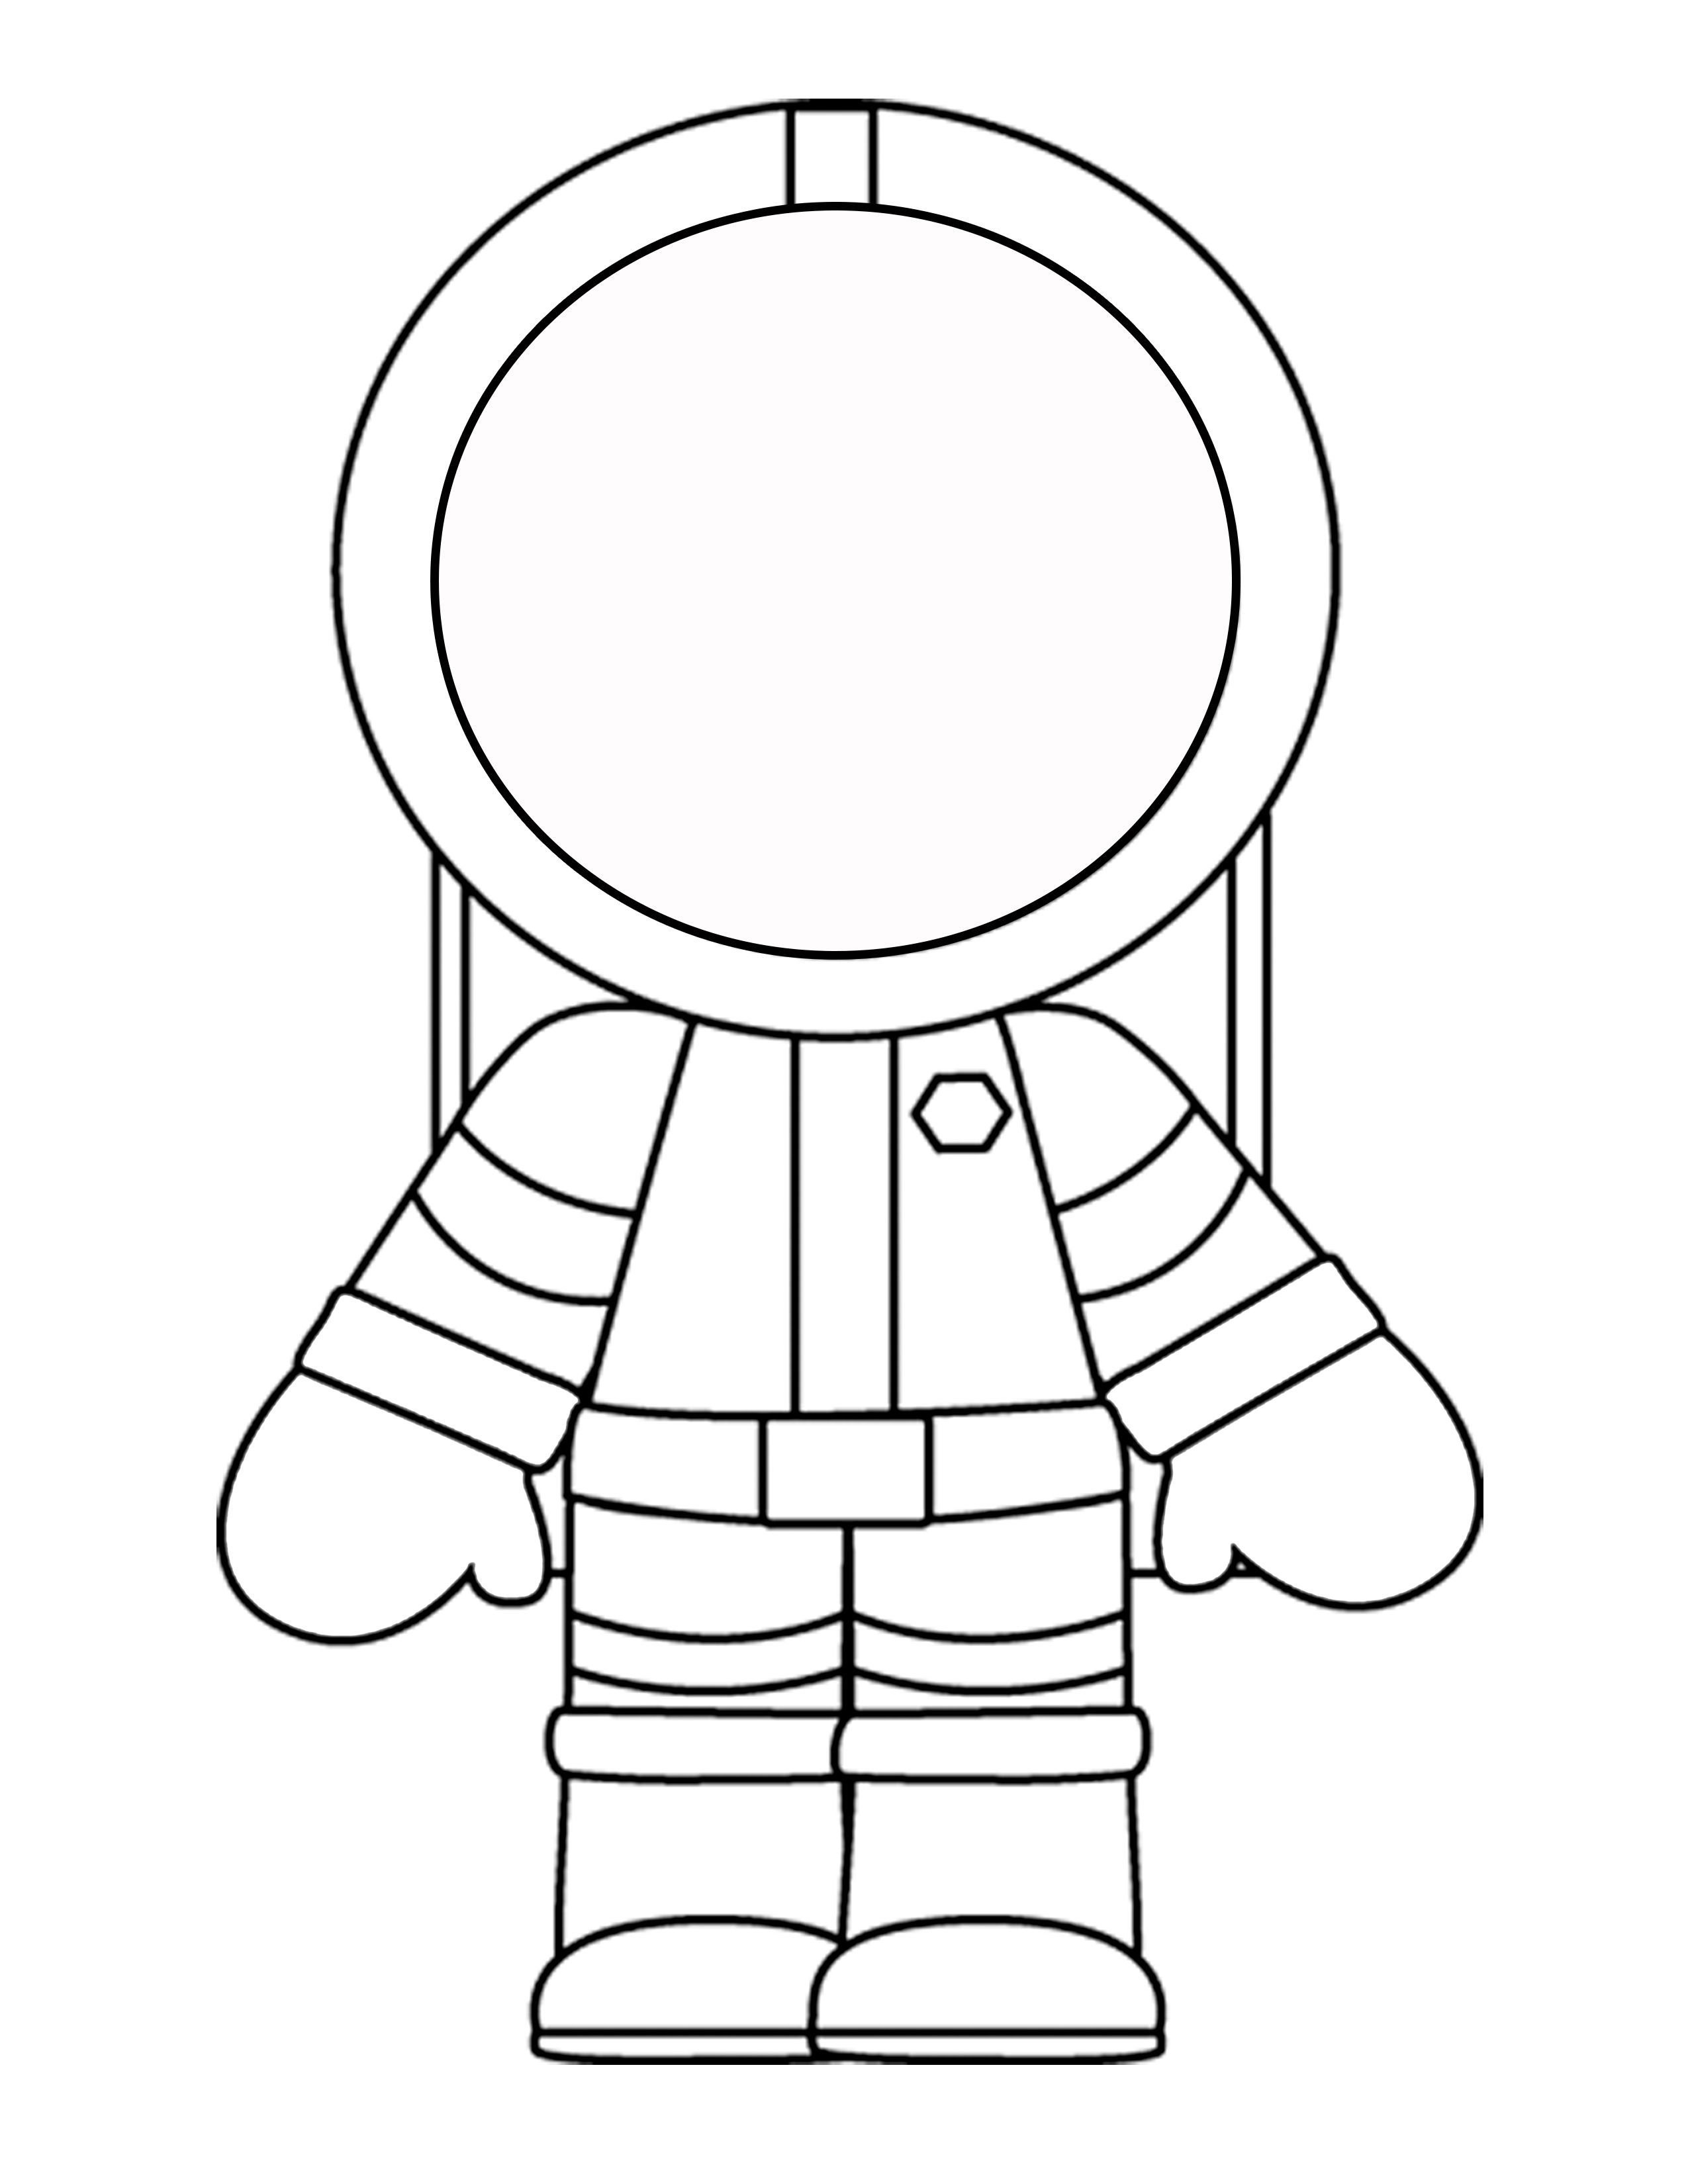 Аппликация ко дню космонавтики шаблоны распечатать. Космонавт раскраска для детей. Космонавт раскраска для малышей. Раскраска Космонавта в скафандре для детей. Rjcvjyfdnраскраска для детей.